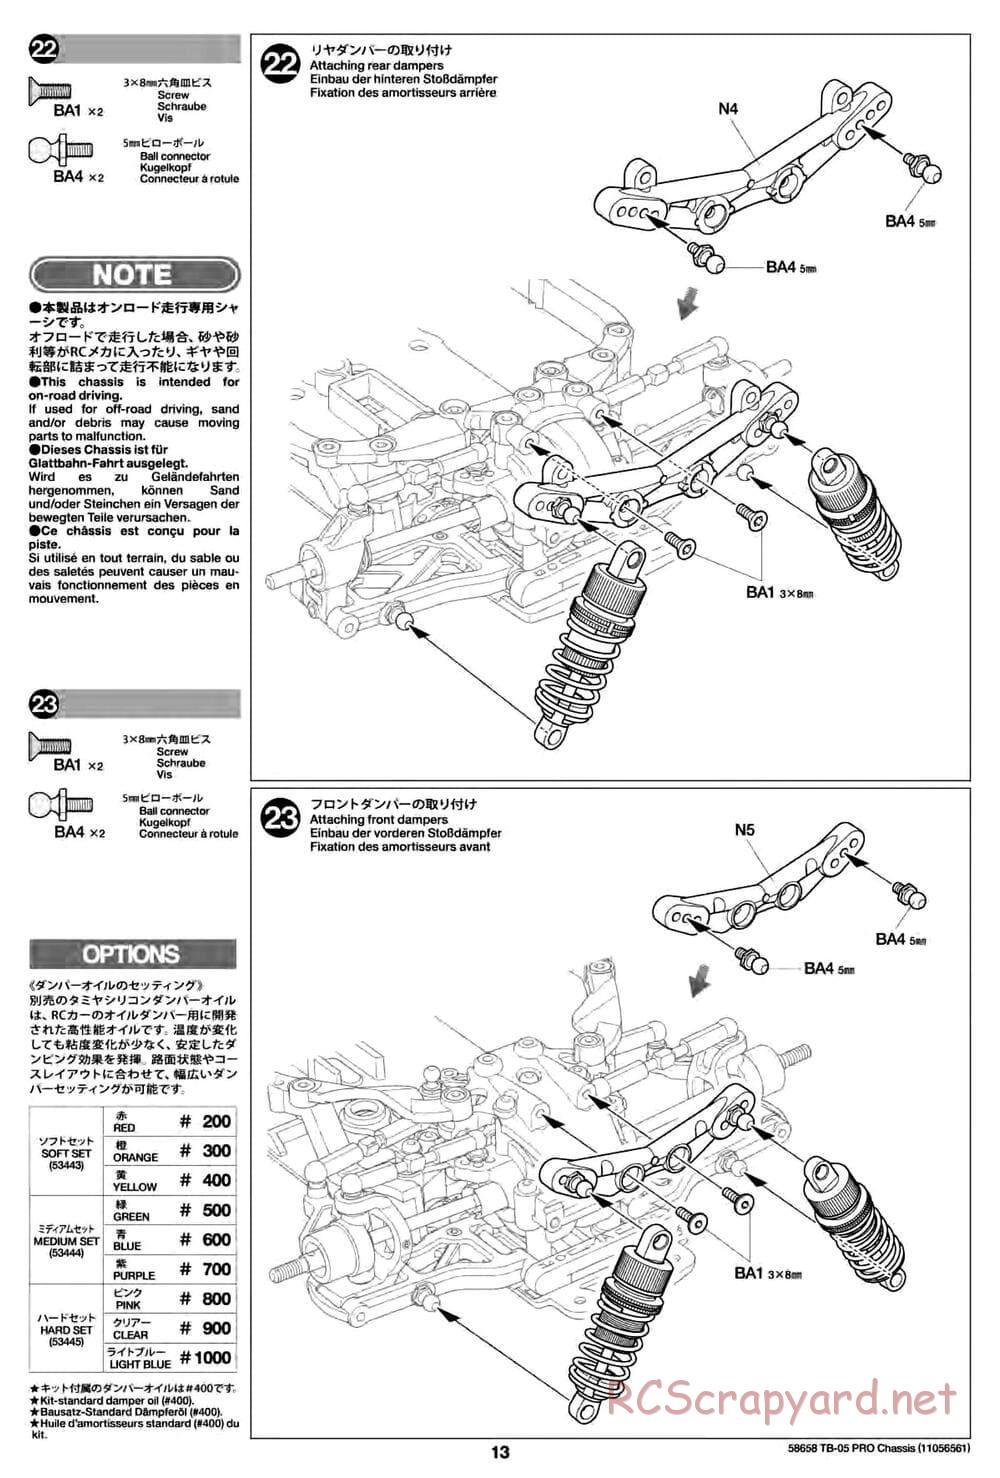 Tamiya - TB-05 Pro Chassis - Manual - Page 13